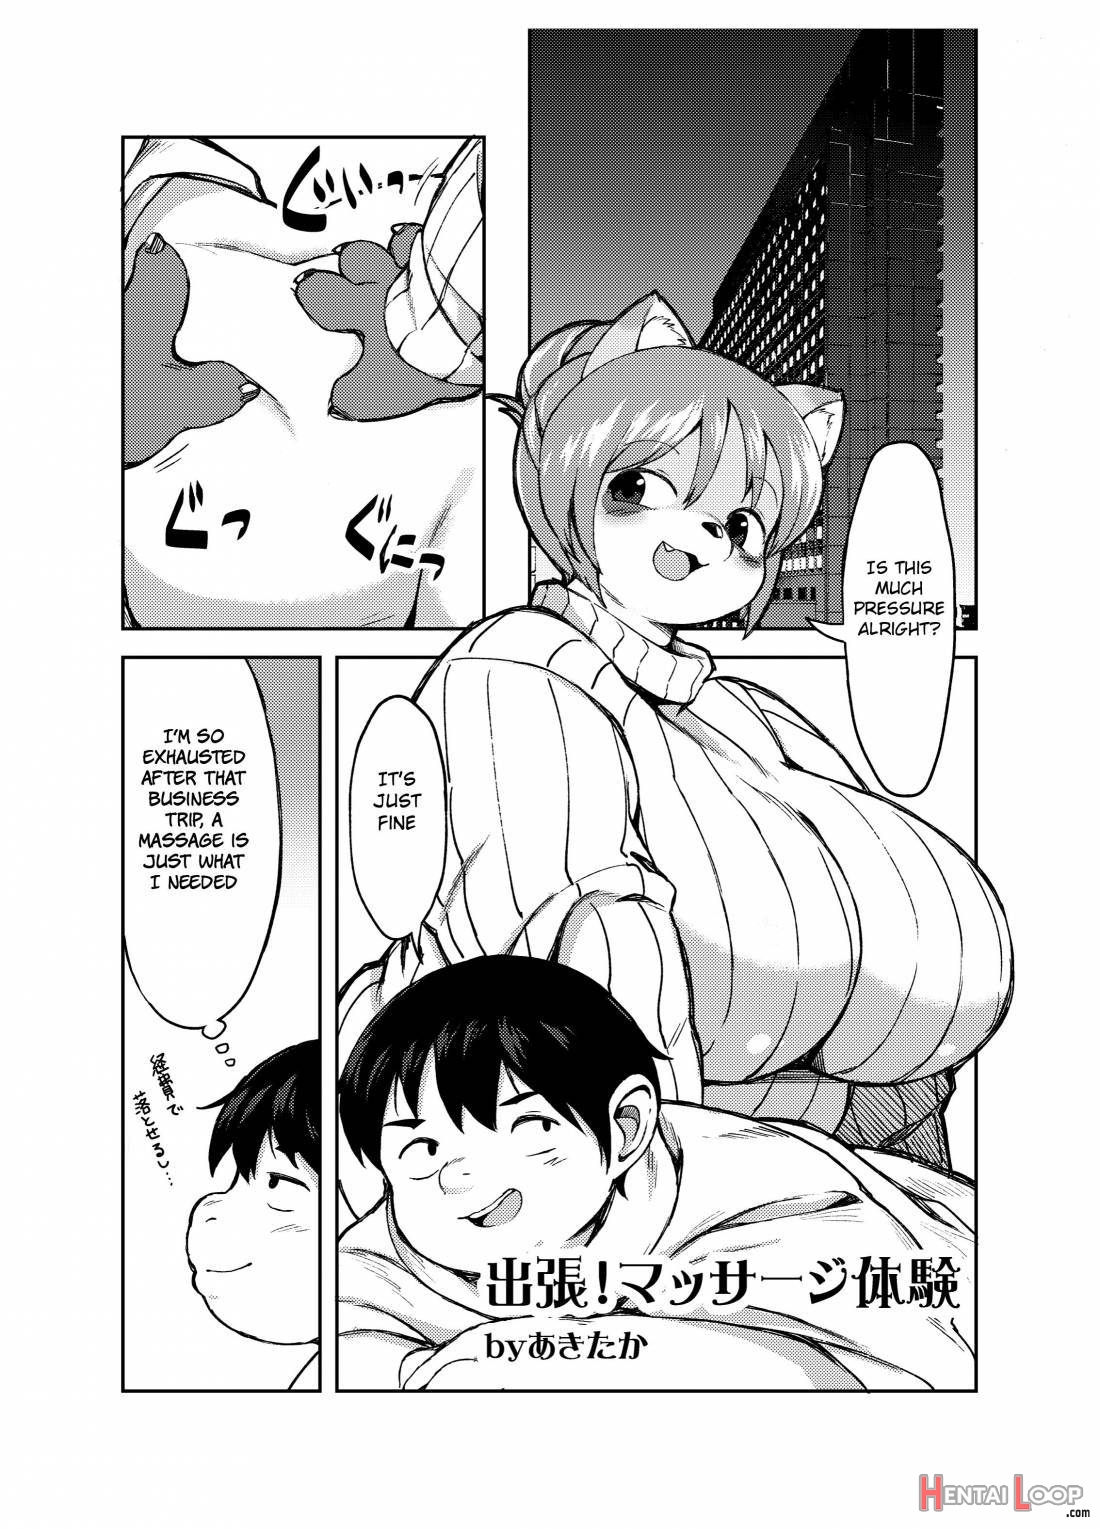 Yojo-han Bunny Part 3 page 21